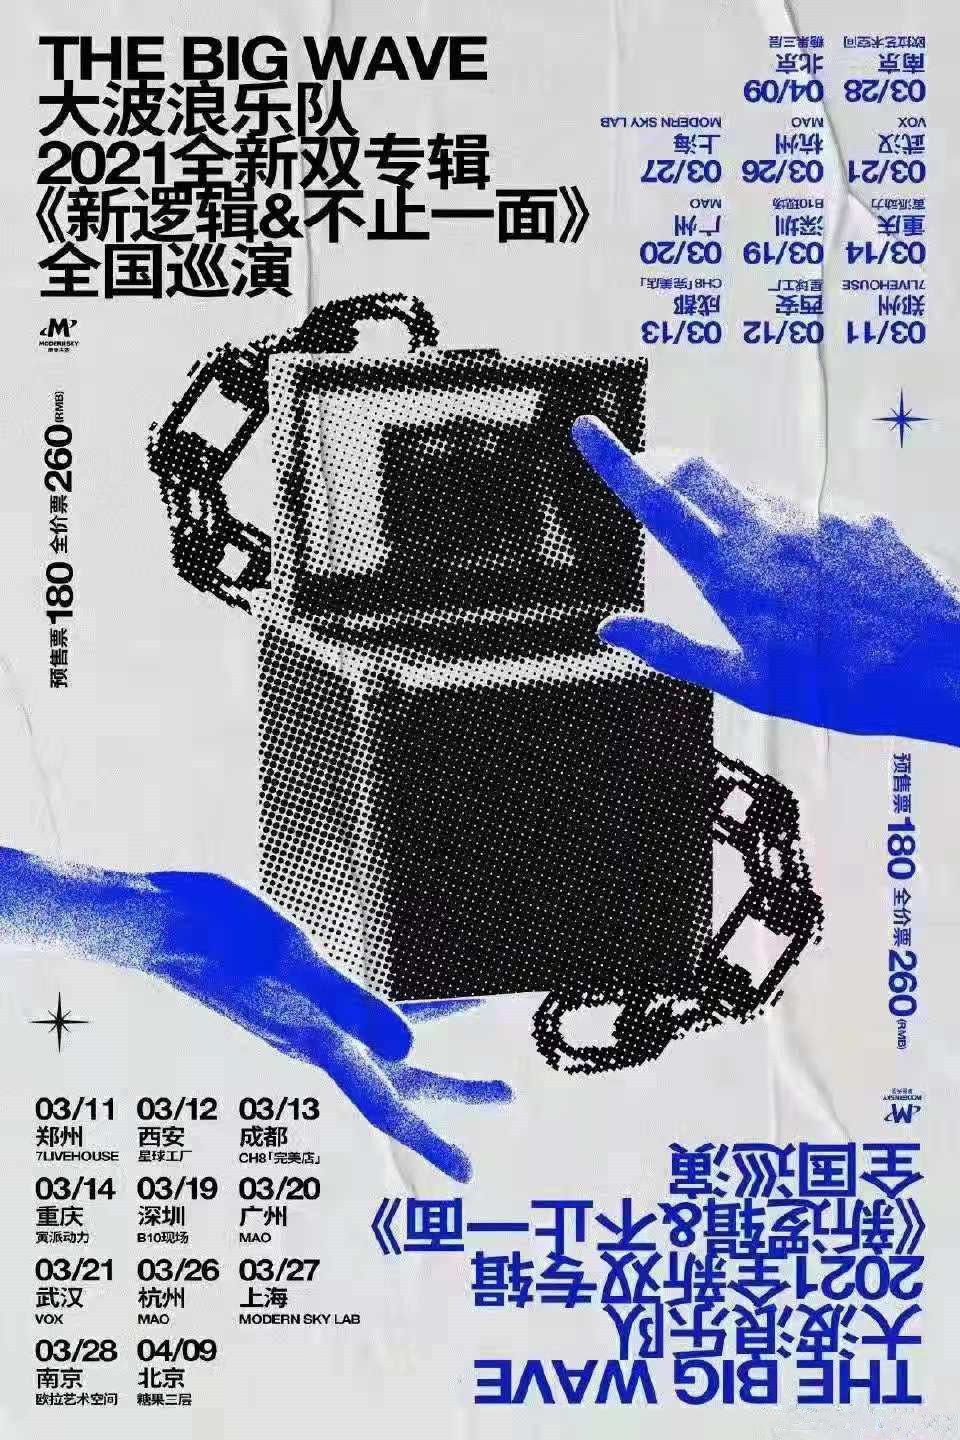 大波浪乐队2021全新双专辑巡演《新逻辑》《不止一面》全国巡演-深圳站